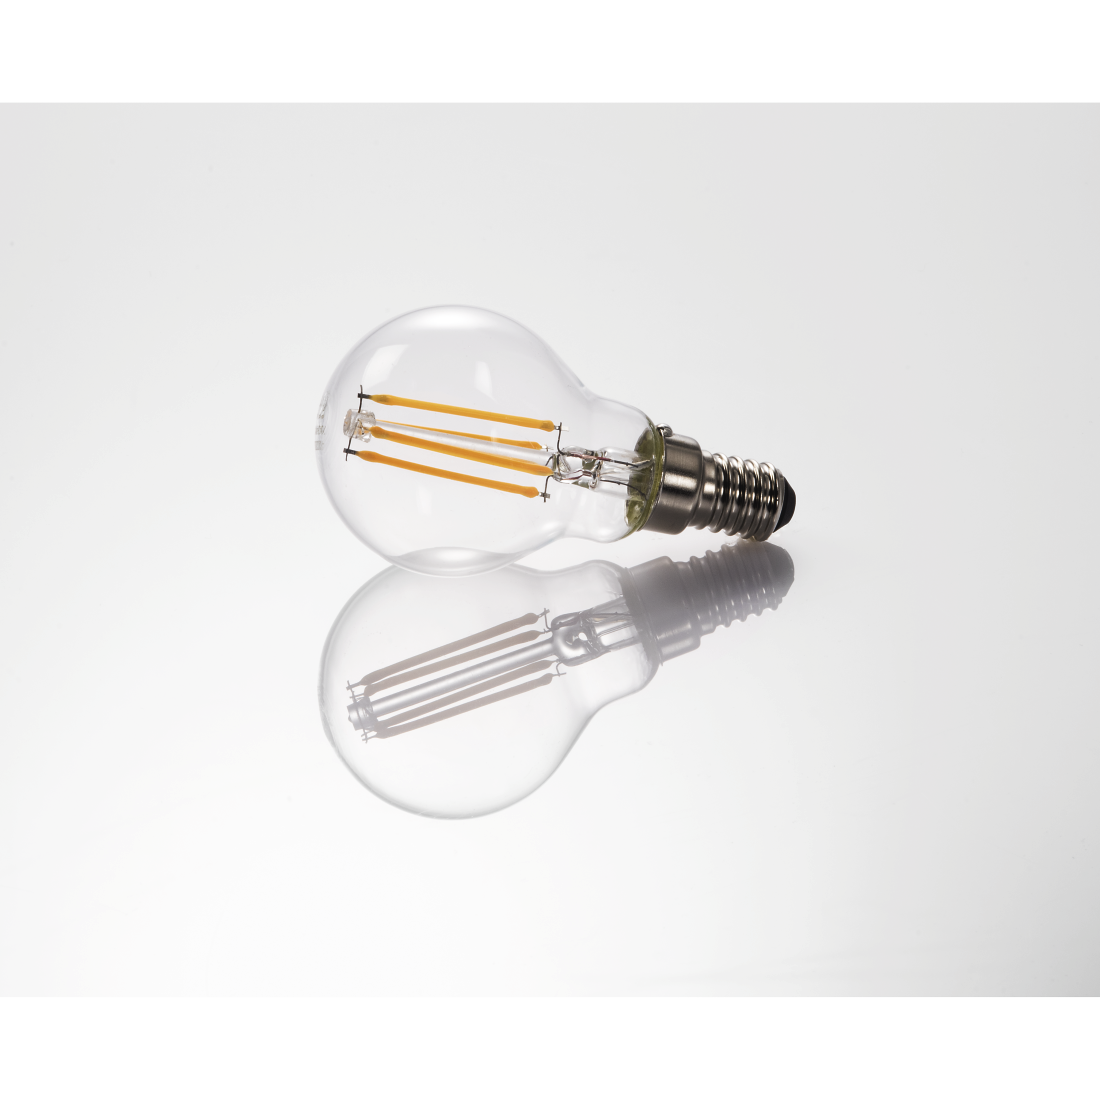 abx3 High-Res Image 3 - Xavax, Ampoule filament à LED, E14, 470lm rempl. amp. sphérique 40W, blc chd